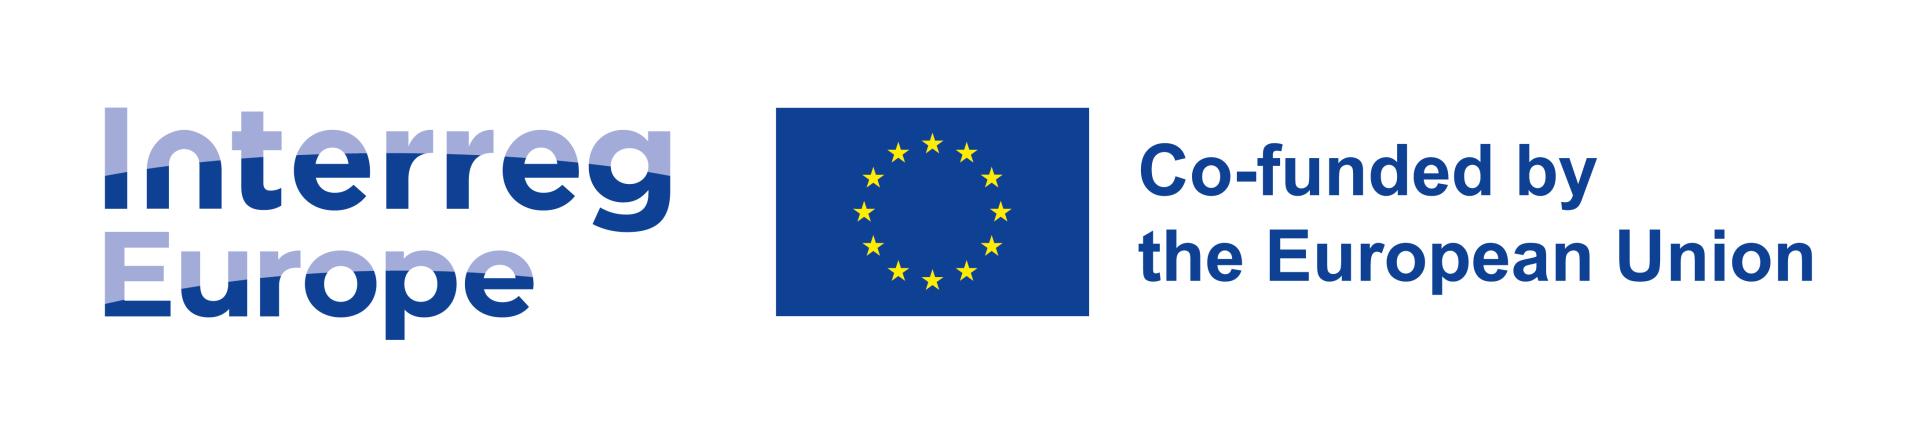 7 nowych państw w programie Interreg Europa - spotkanie informacyjne - zobacz więcej